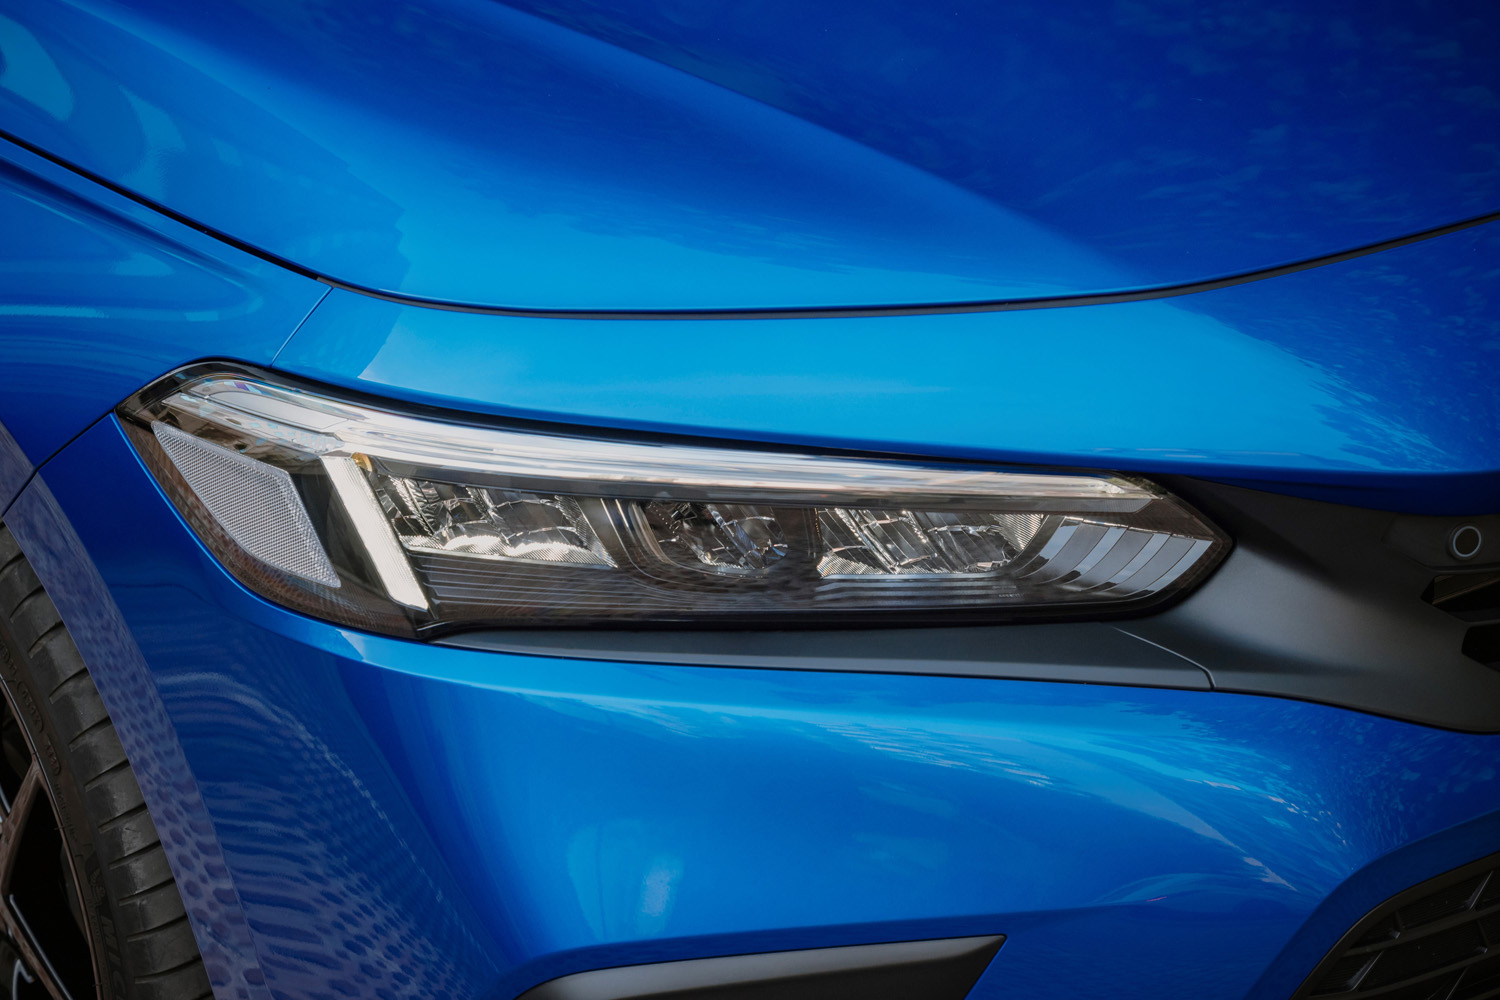 2022 Honda Civic e:HEV headlights